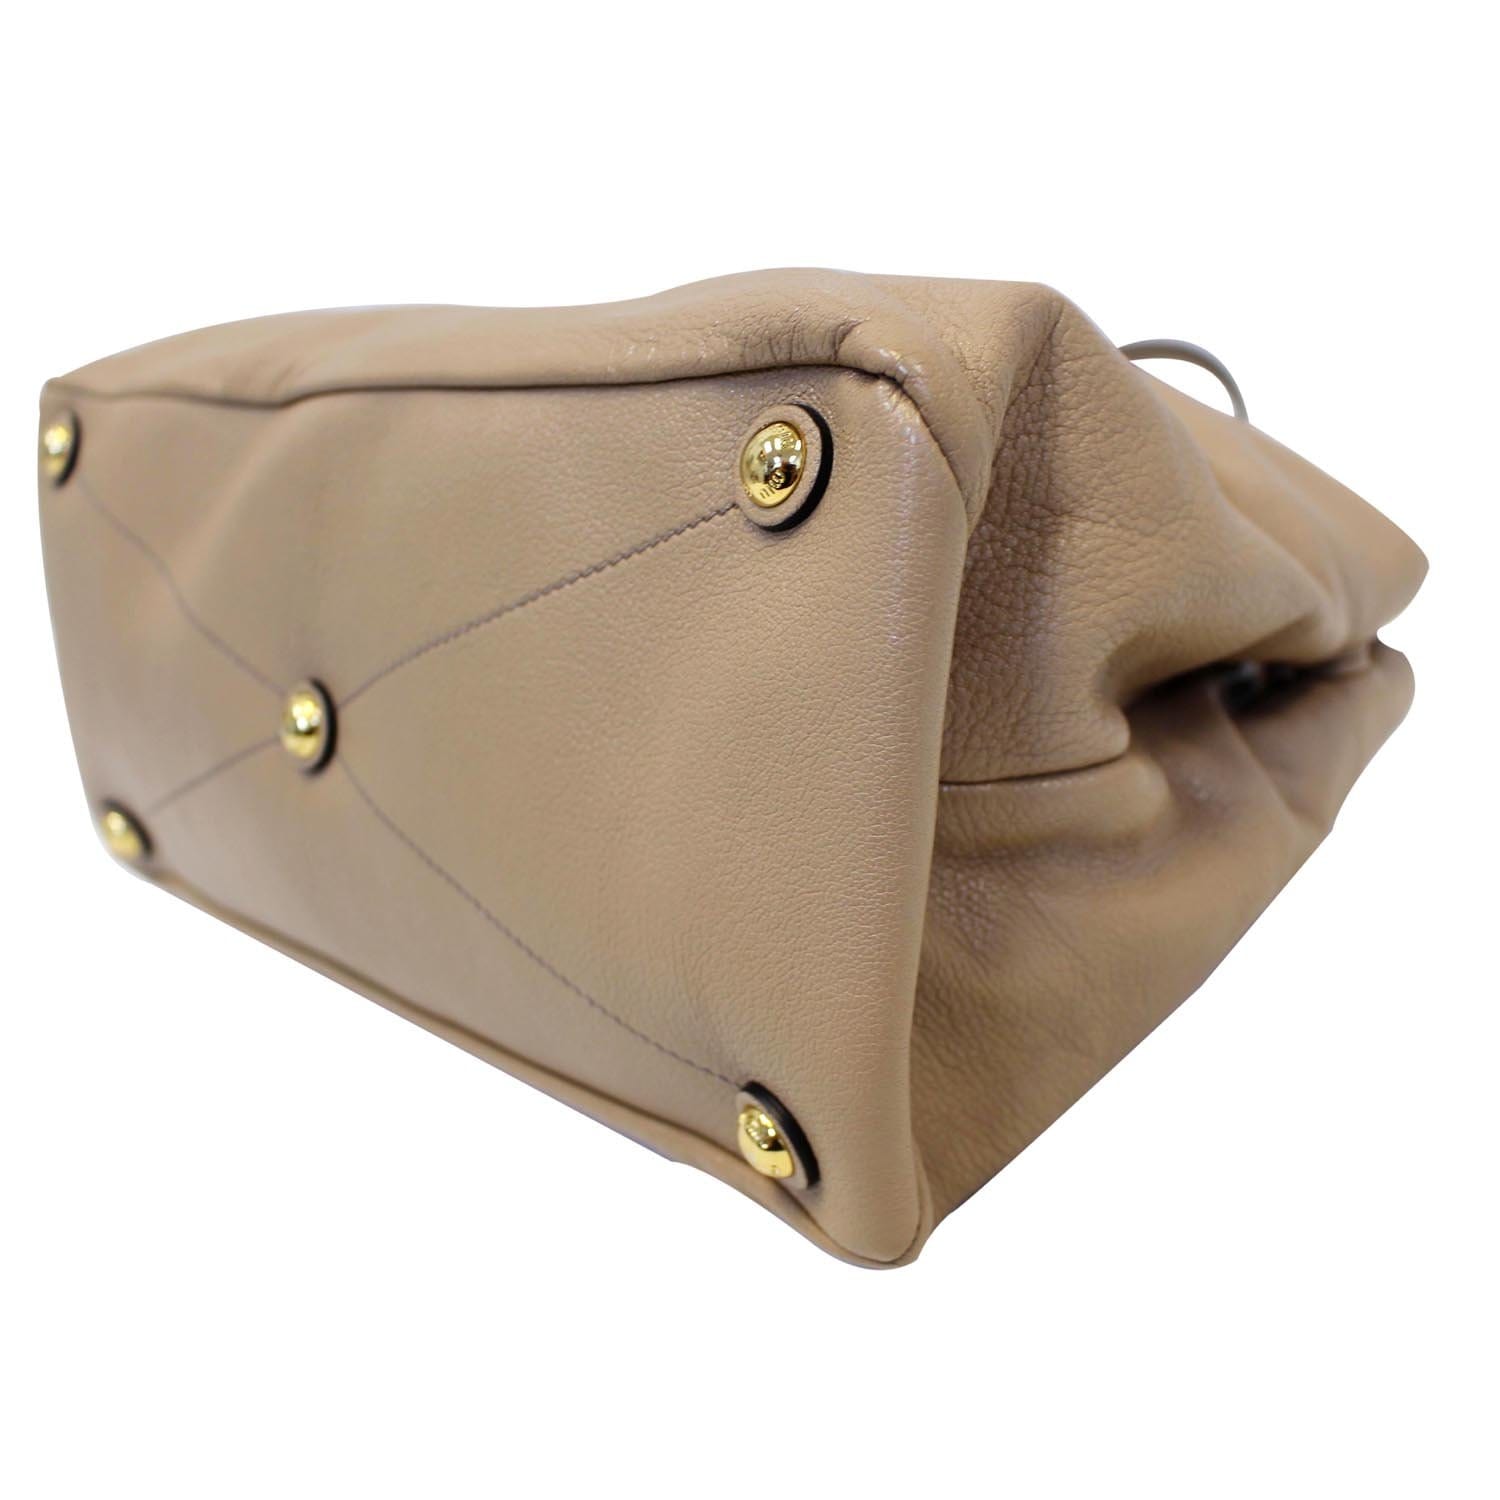 Miu Miu Tan/Yellow Madras Leather Shoulder Bag